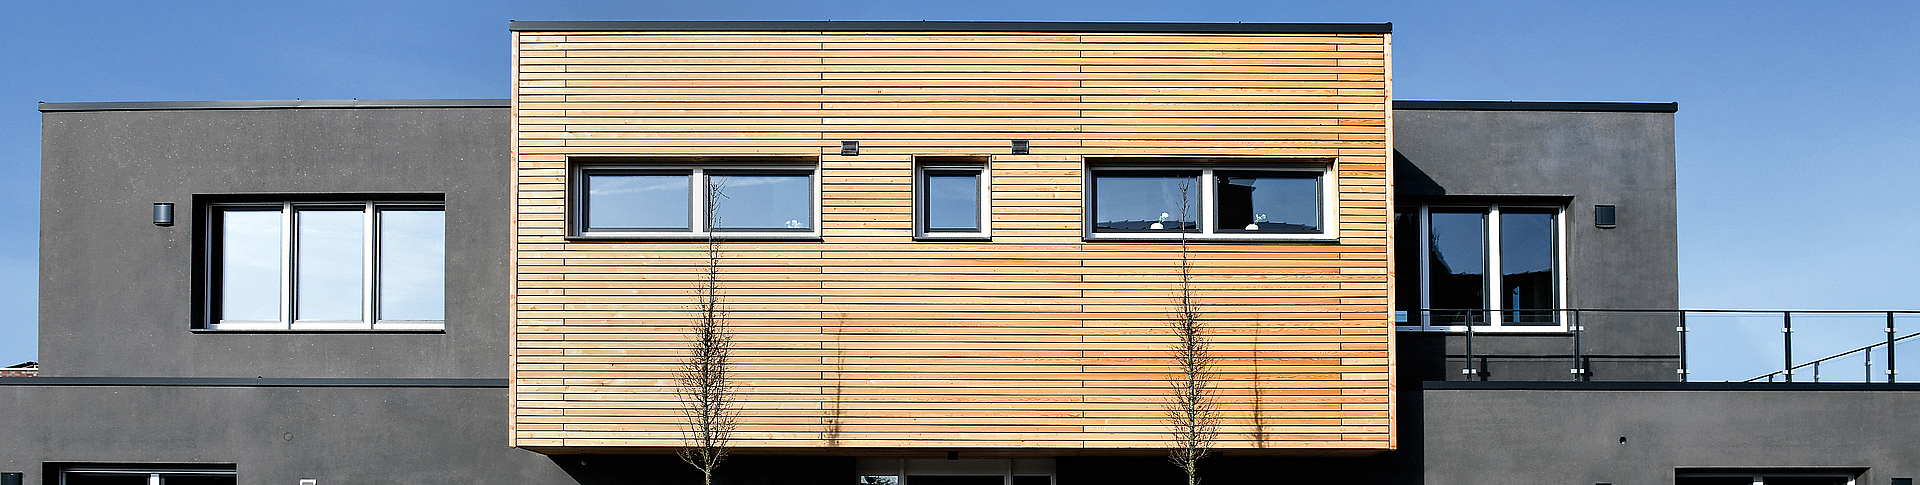 Frontalblick auf graues Betonhaus mit einem Vorbau aus Holzpaneelen. 